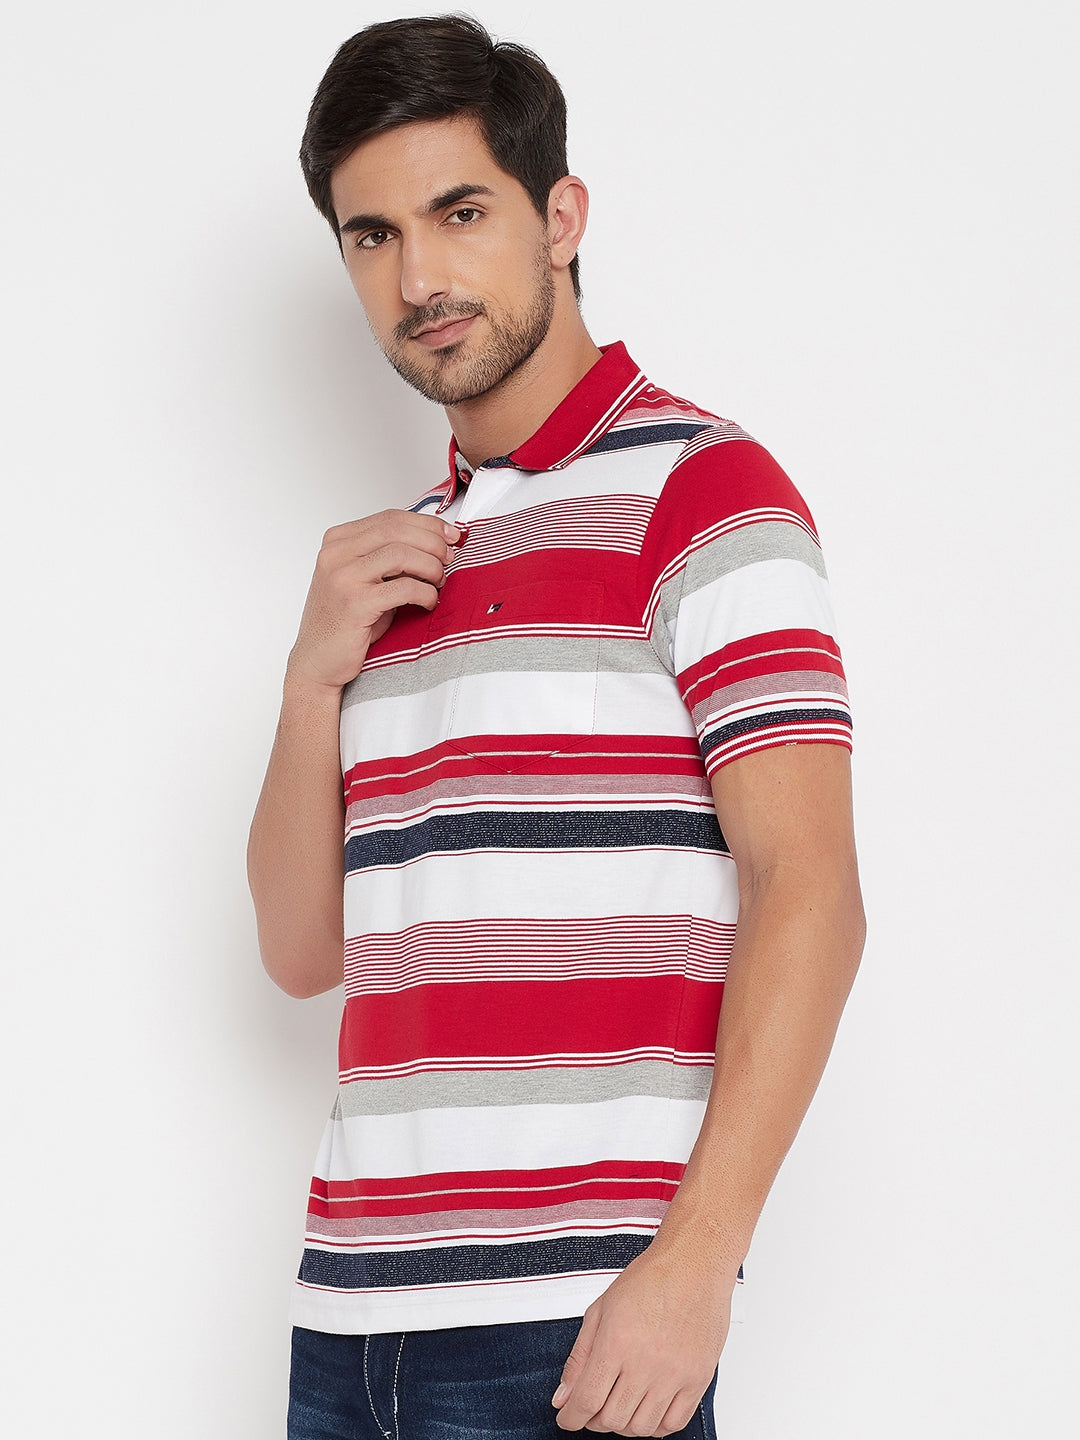 Neva Men's Regular Fit Multicolored Stripes T-Shirt -Red